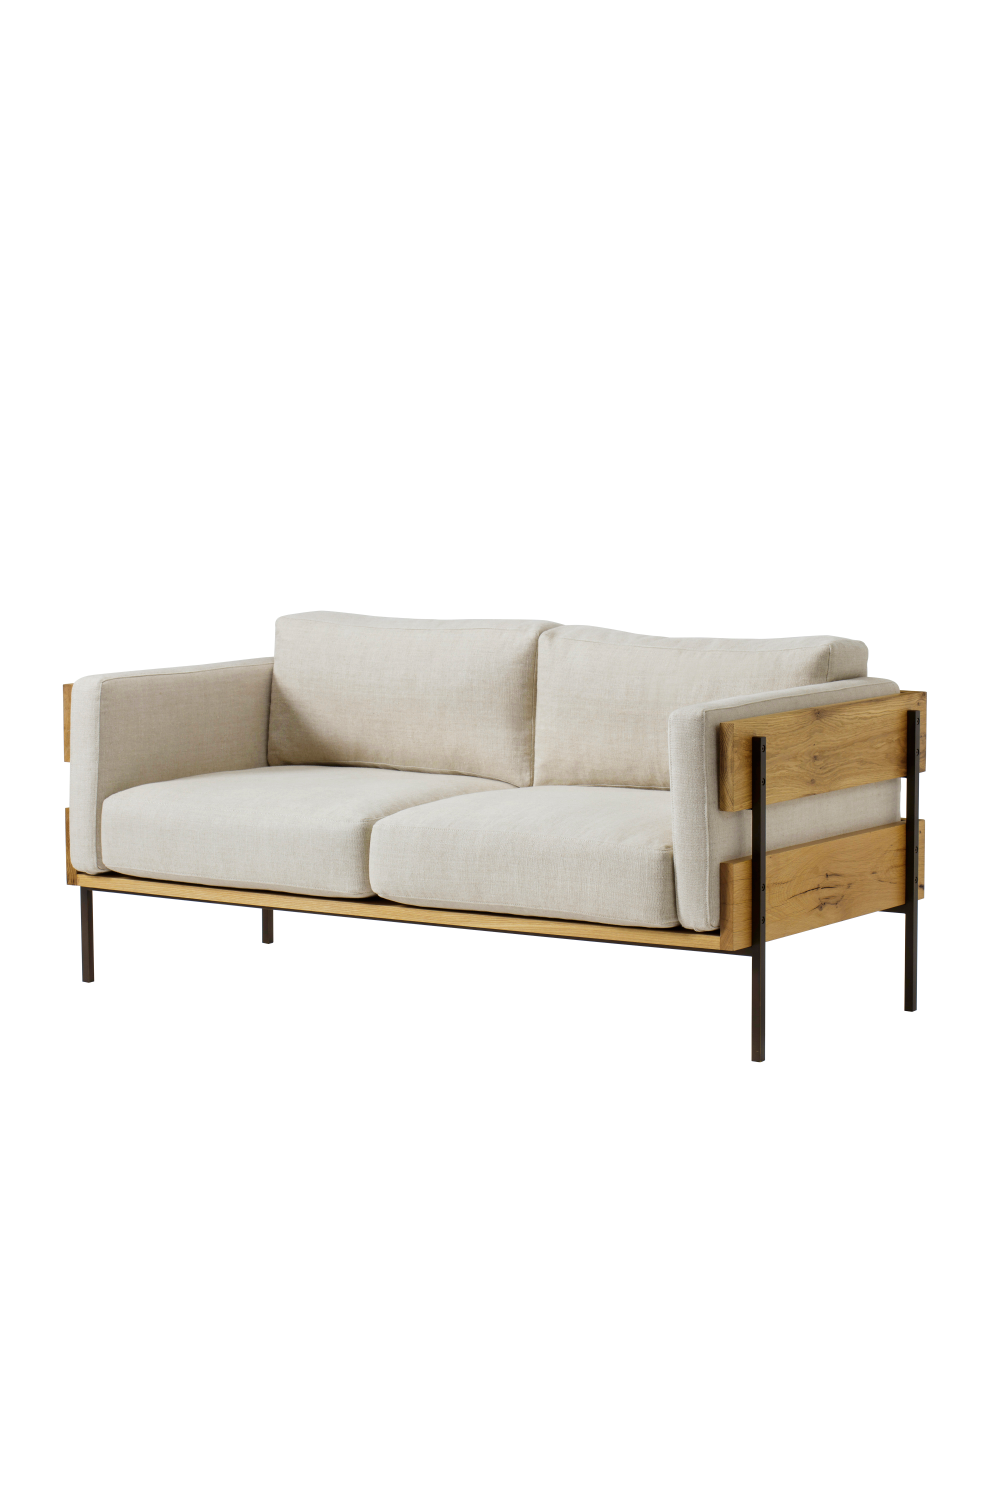 Wooden Framed Upholstered Love Seat | Andrew Martin Carson | Oroa.com